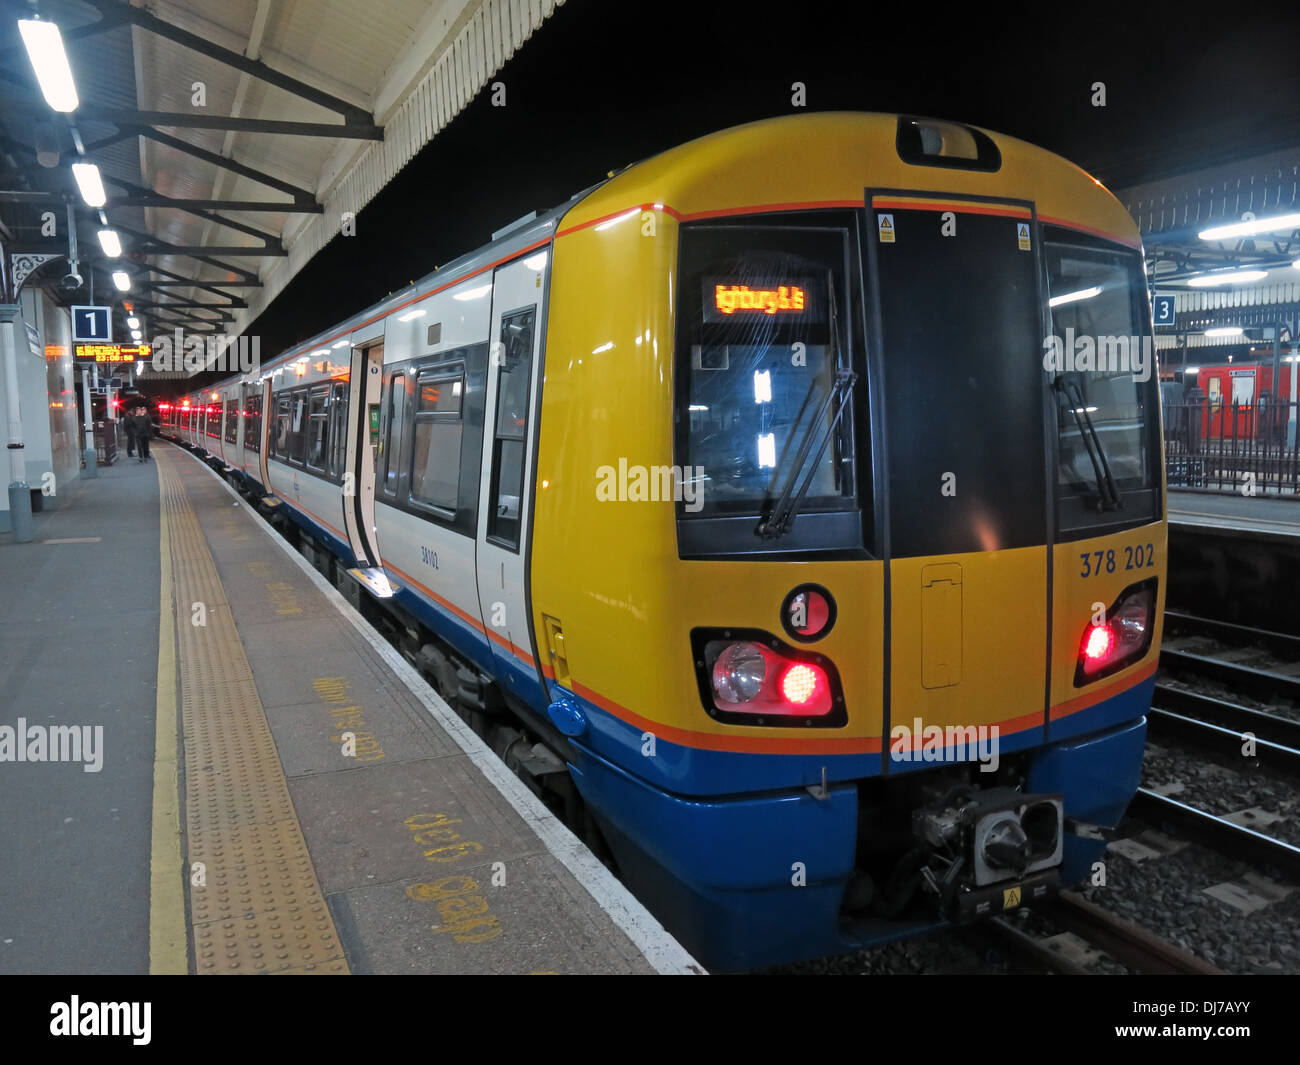 South West London Overground train, à Clapham Junction, la nuit no 378202 Angleterre Royaume-Uni Banque D'Images